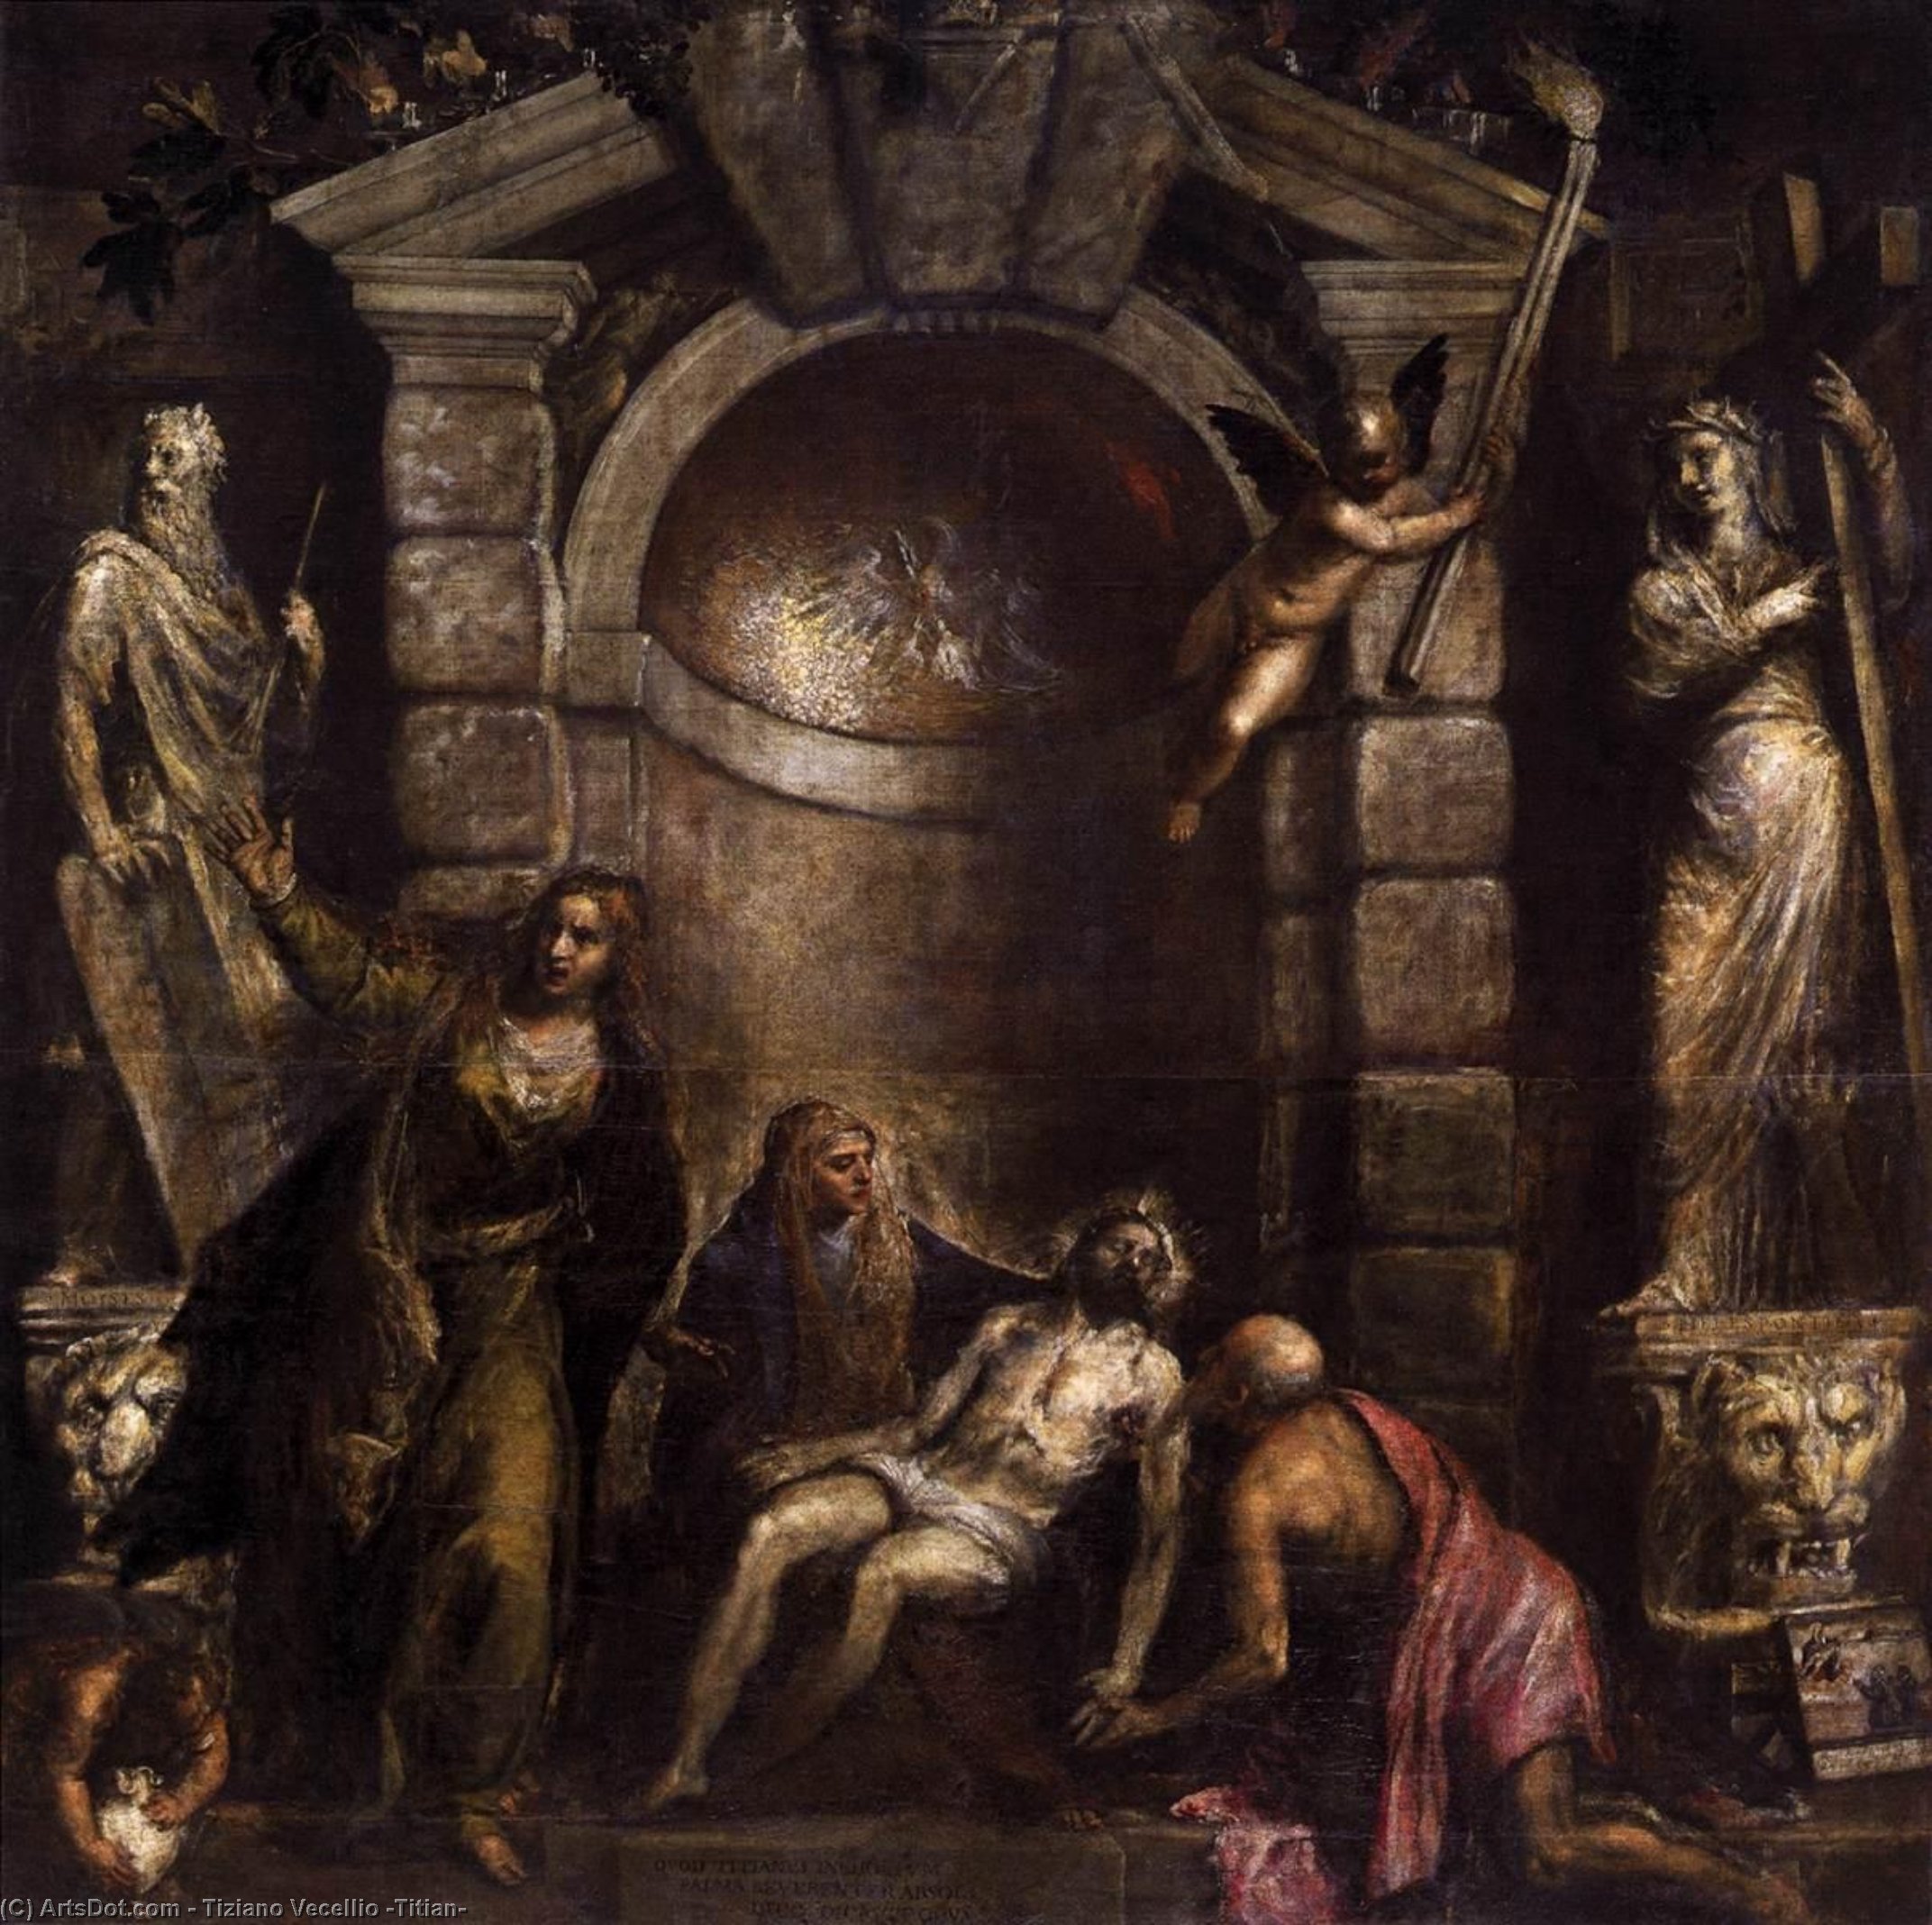 Achat Reproductions De Qualité Musée Pietà, 1576 de Tiziano Vecellio (Titian) (1490-1576, Italy) | ArtsDot.com